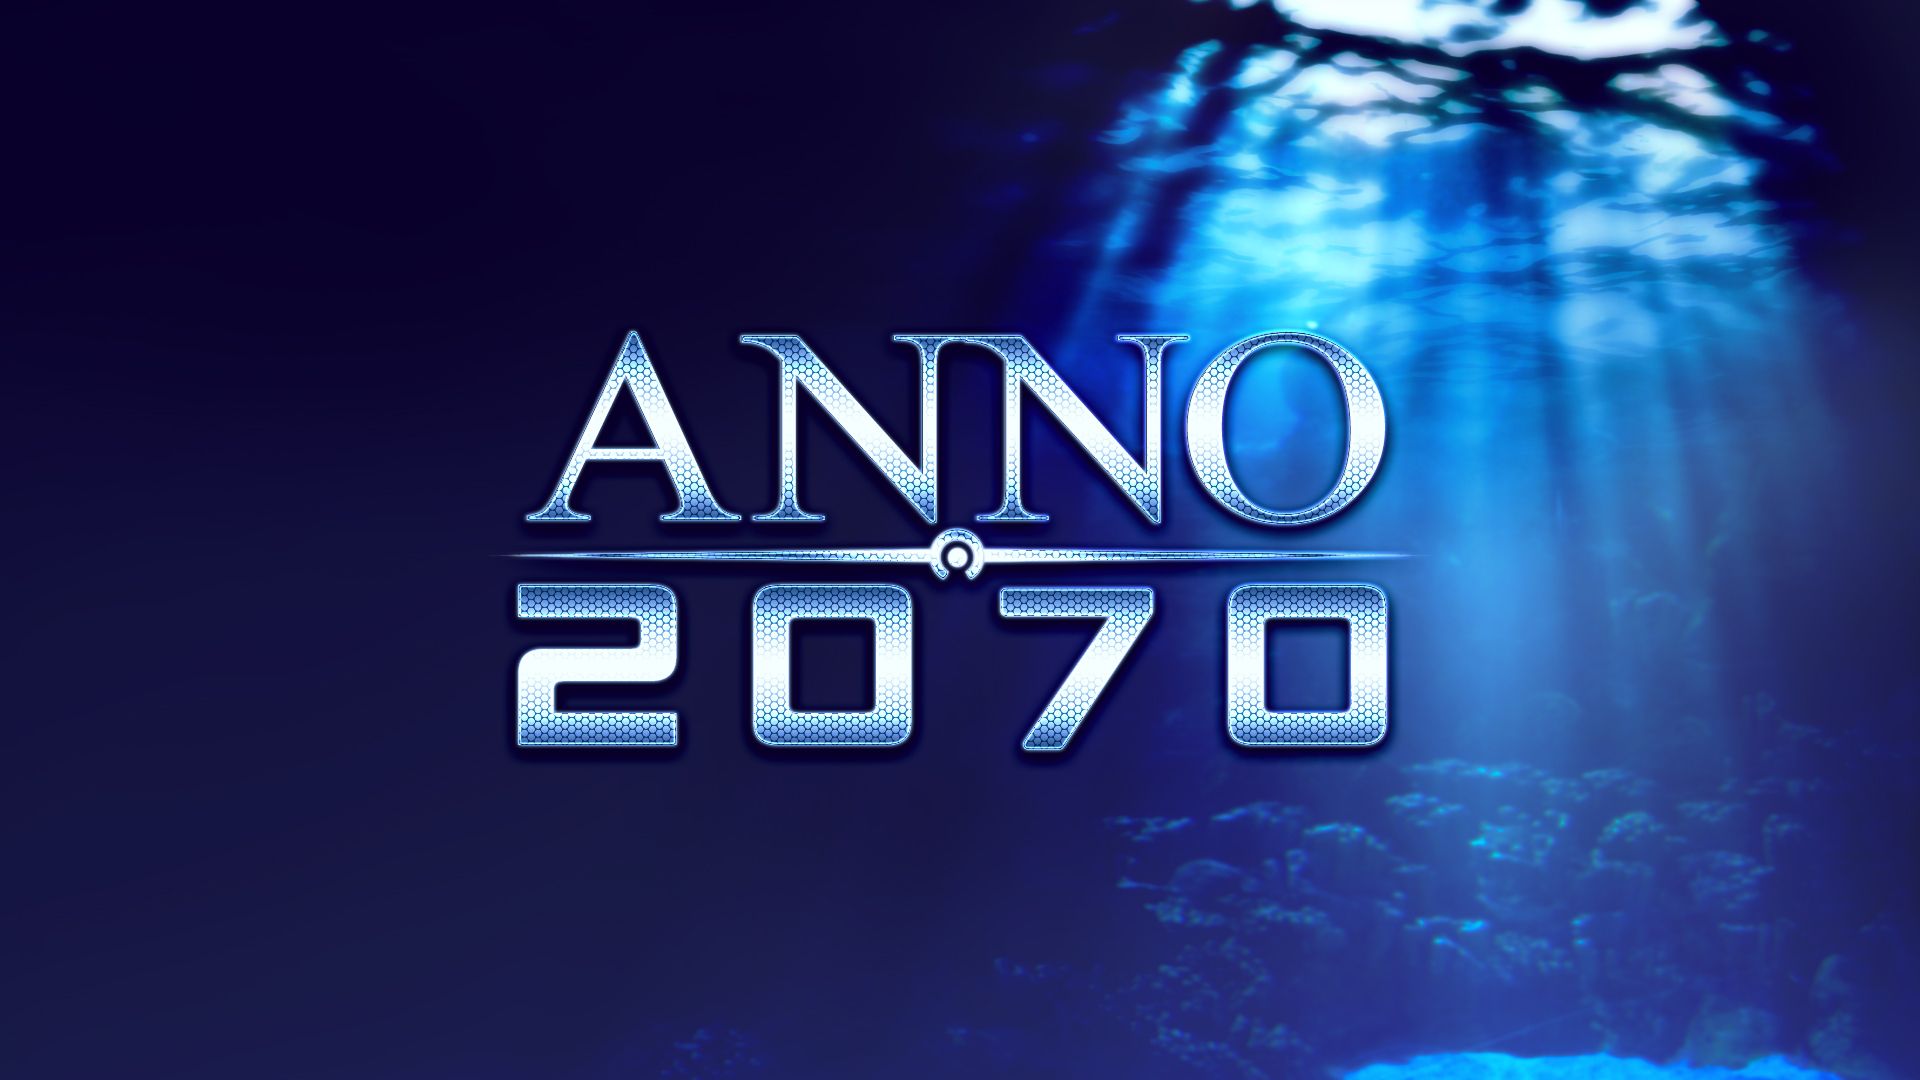 Anno 2070 UBI KEY REGION EU